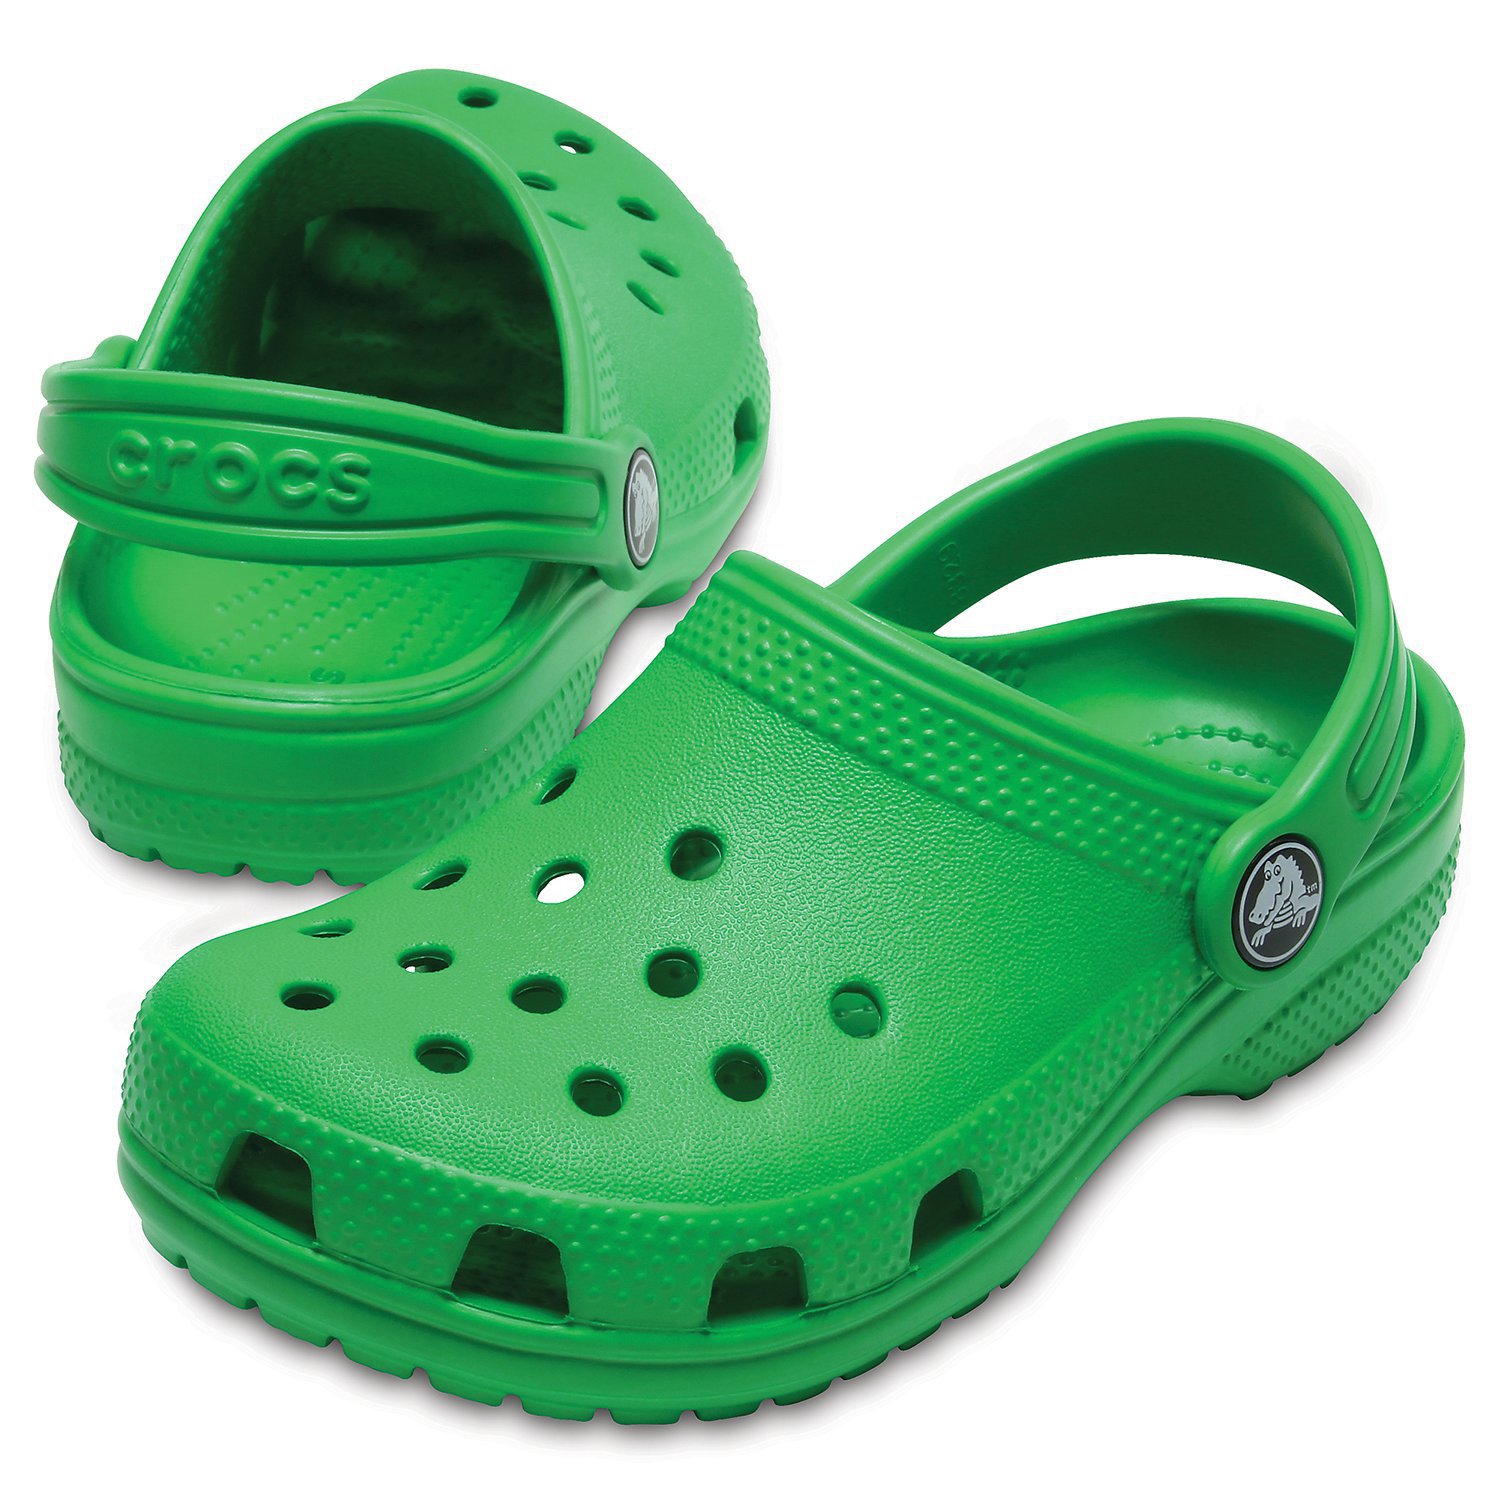 Сабо Crocs Classic Clog (зеленый) 46682 204536-3E8 купить в Москве на  Диномама.ру